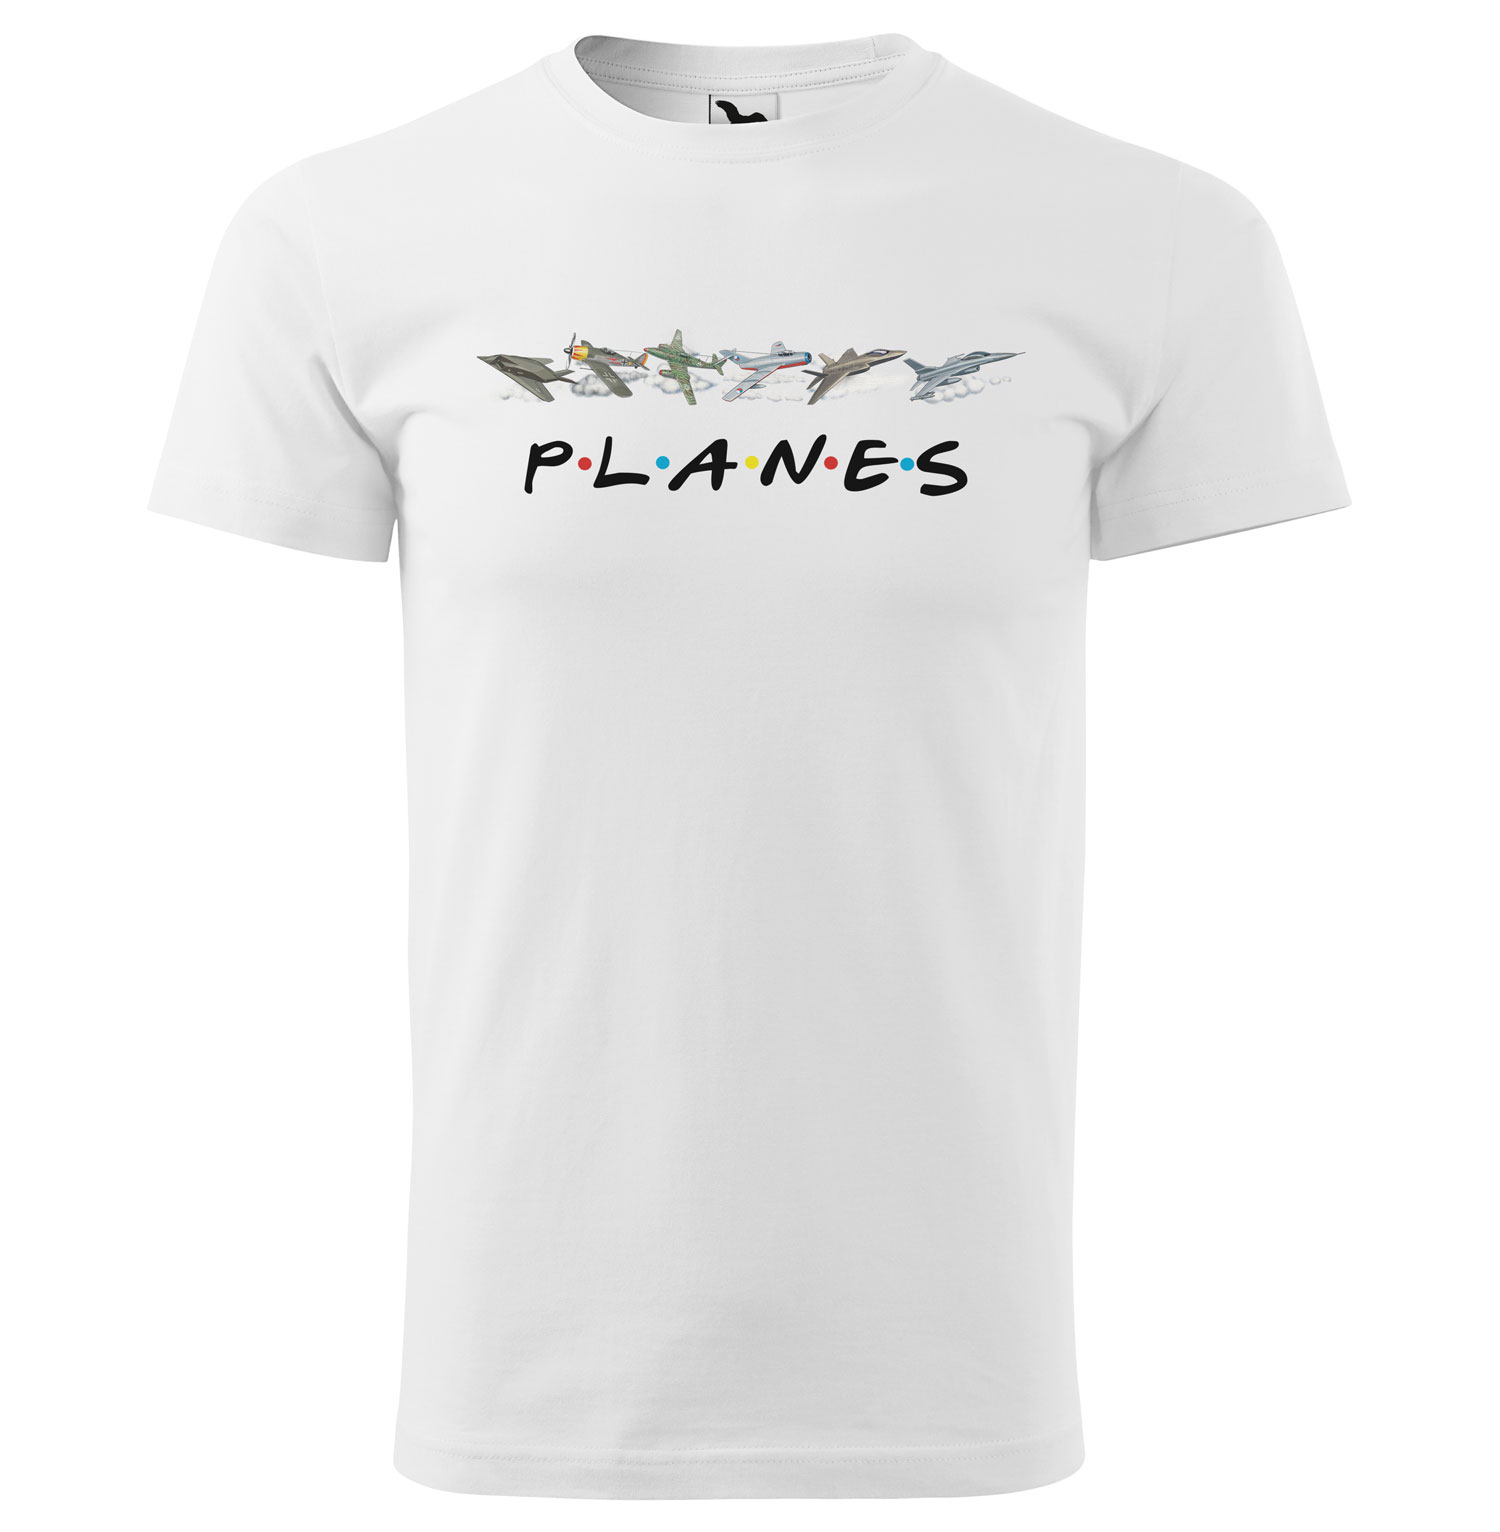 Tričko Planes (Velikost: L, Typ: pro muže, Barva trička: Bílá)